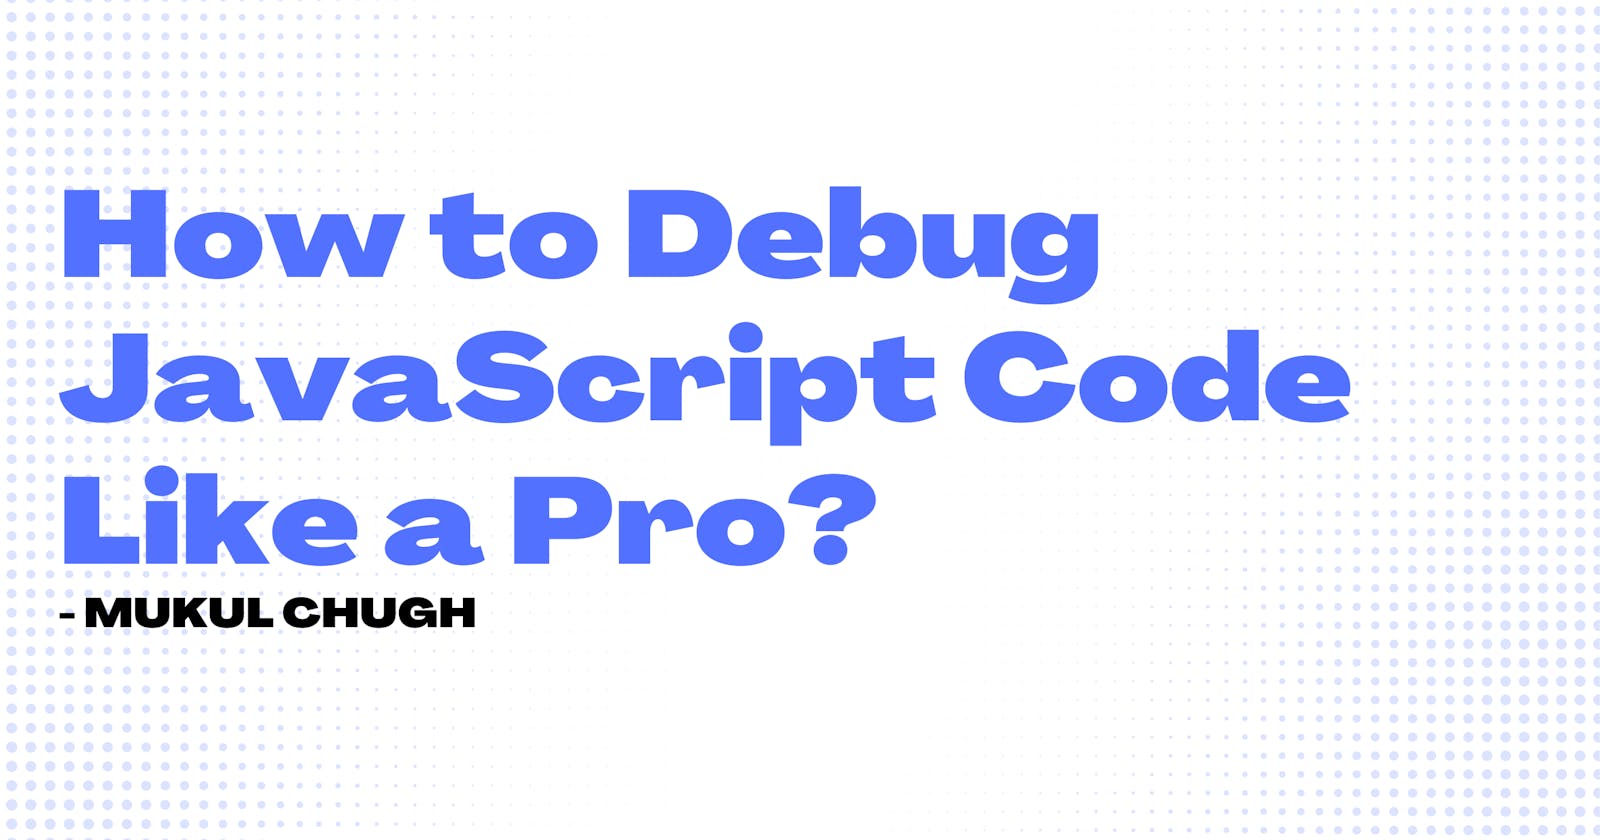 How to Debug JavaScript Code Like a Pro?